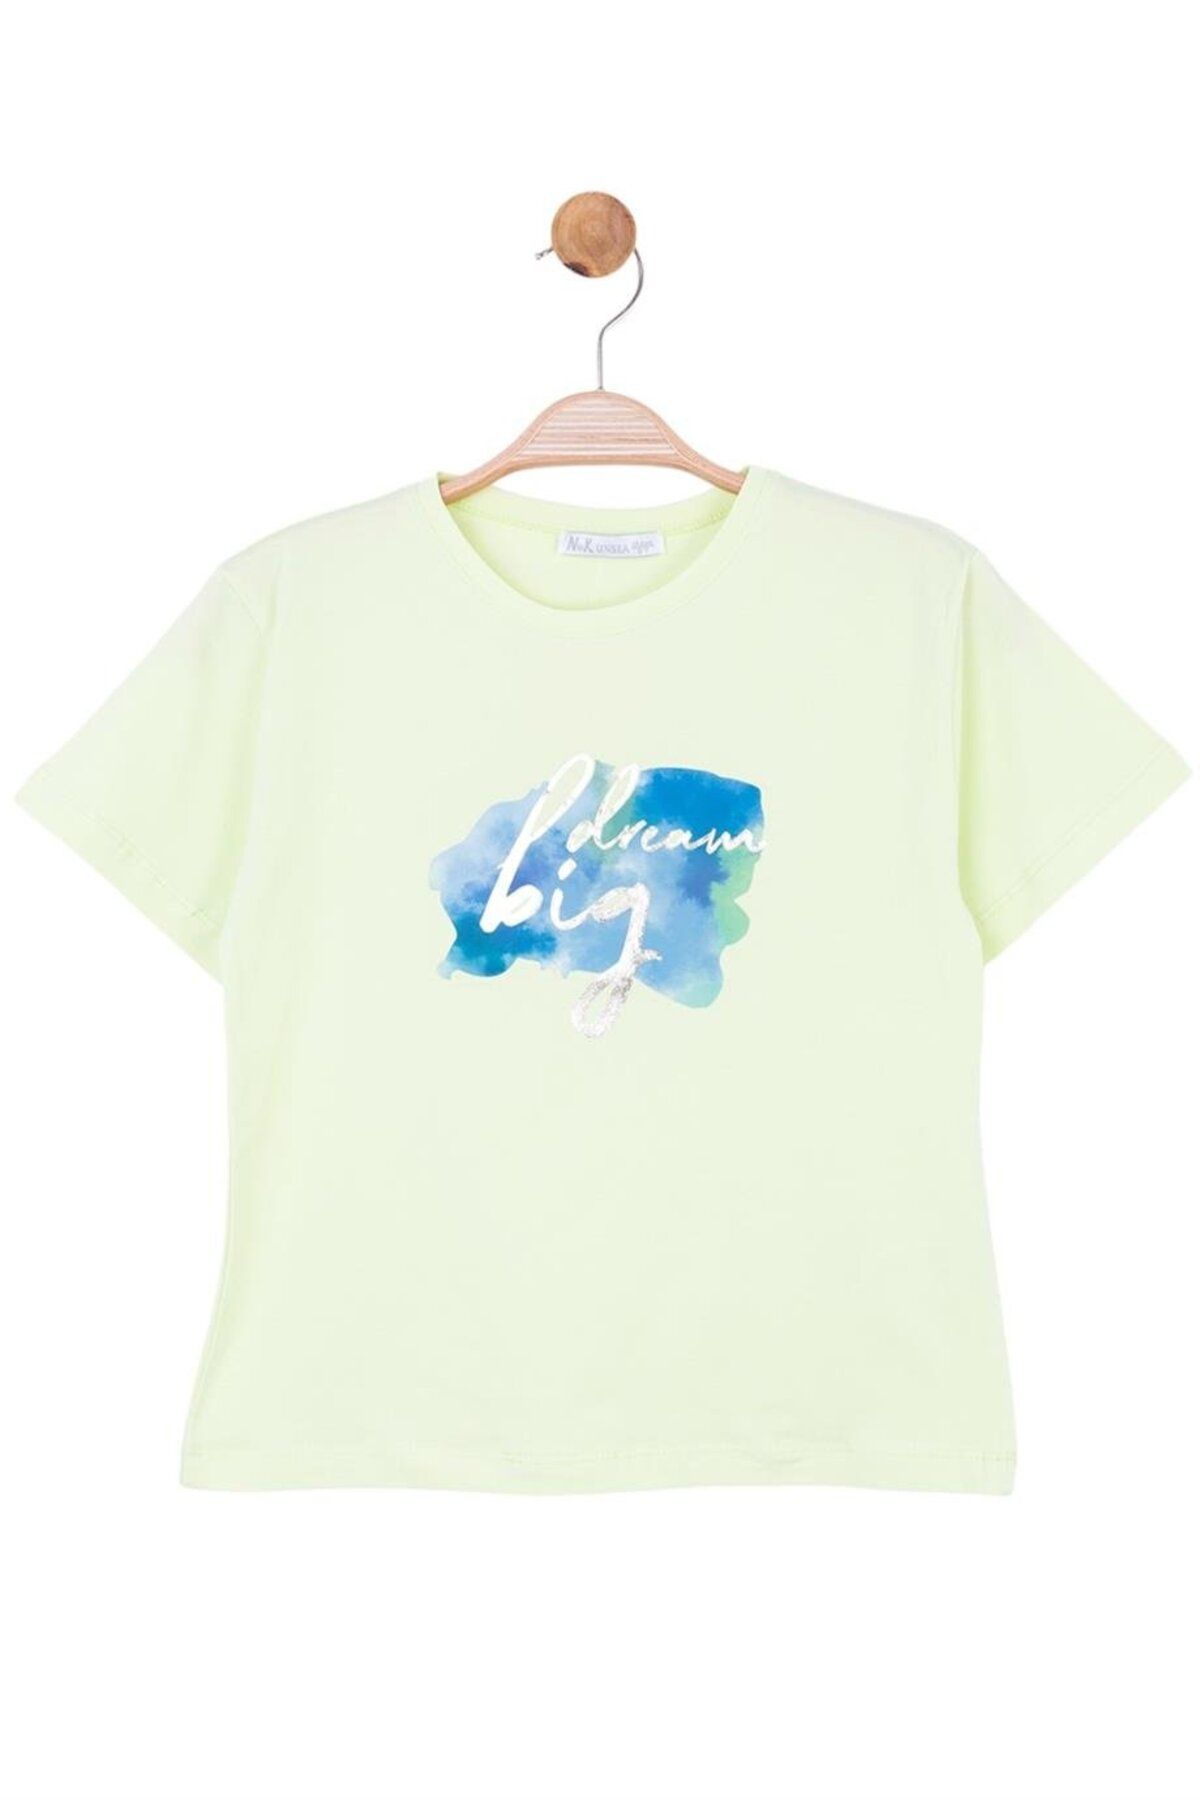 Nk Kids Kız Çocuk Big Dream Yazılı Kısa Kol T-shirt 34345 Neon Sarı